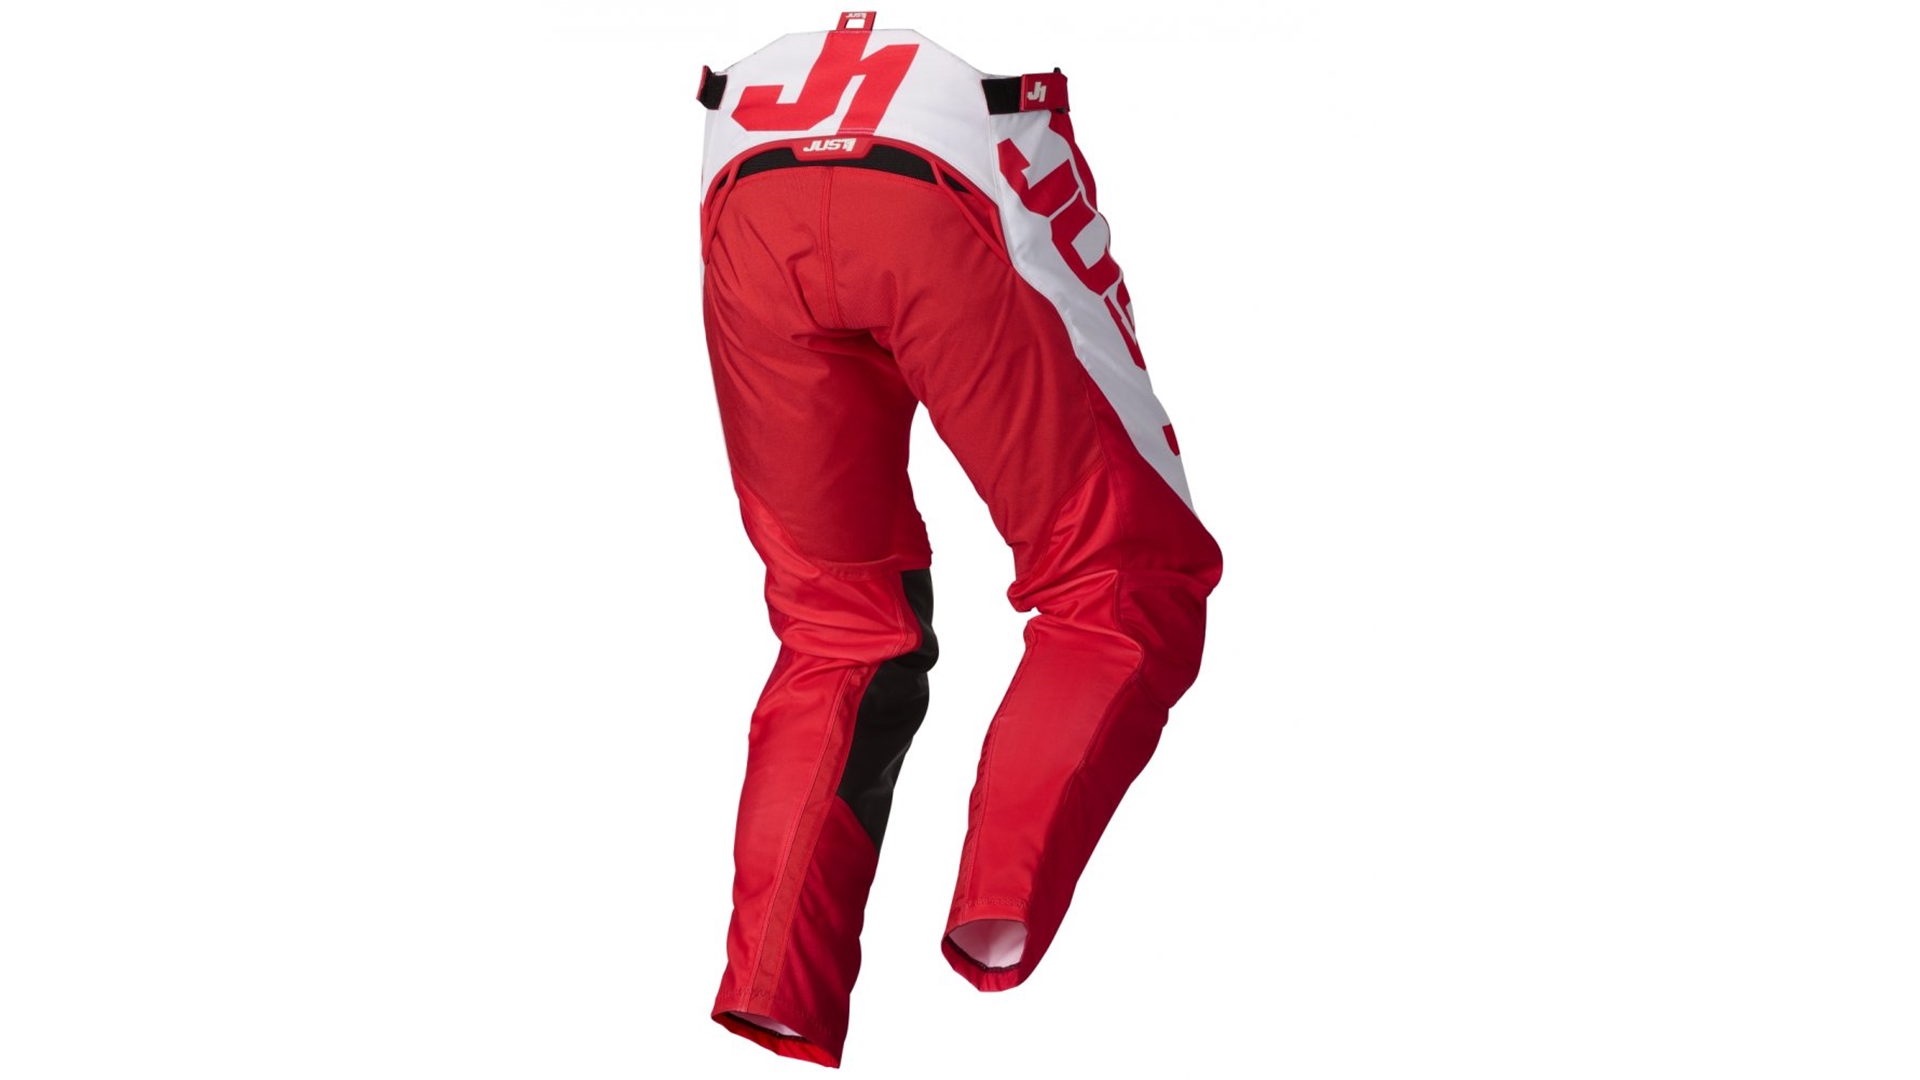 JUST1 J-FORCE VERTIGO moto kalhoty červená/bílá 38